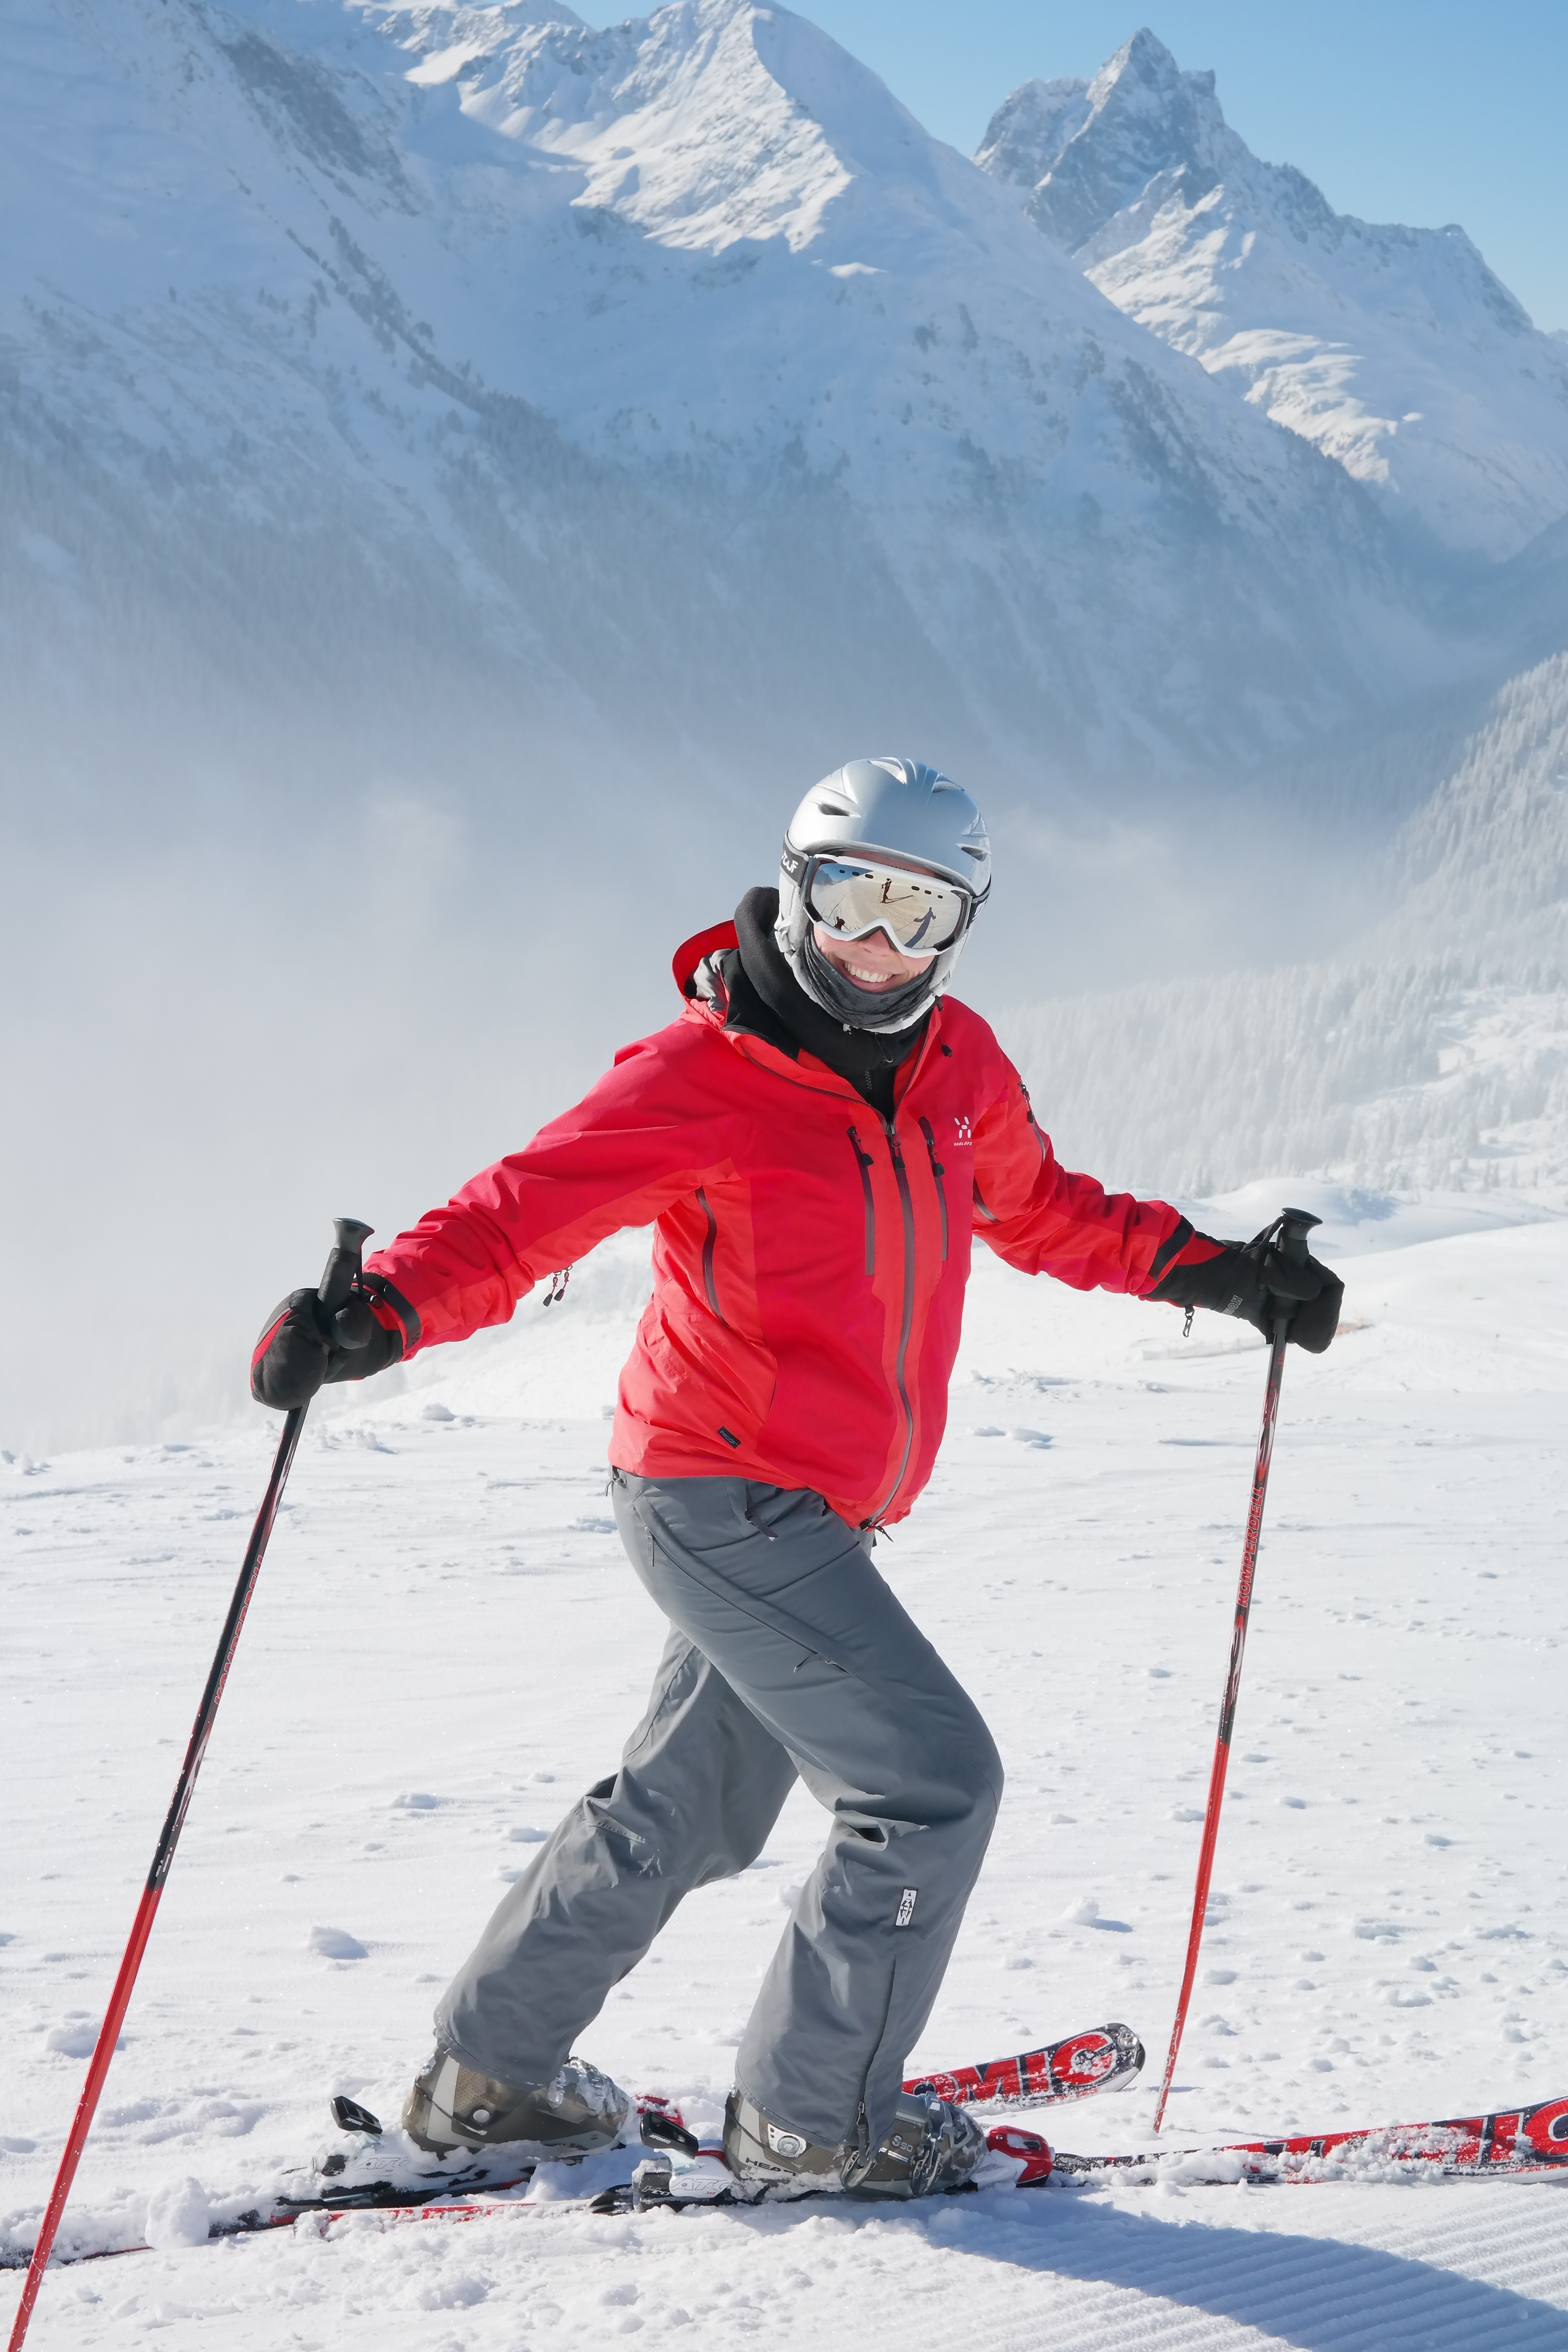 Girl skier in ski suit